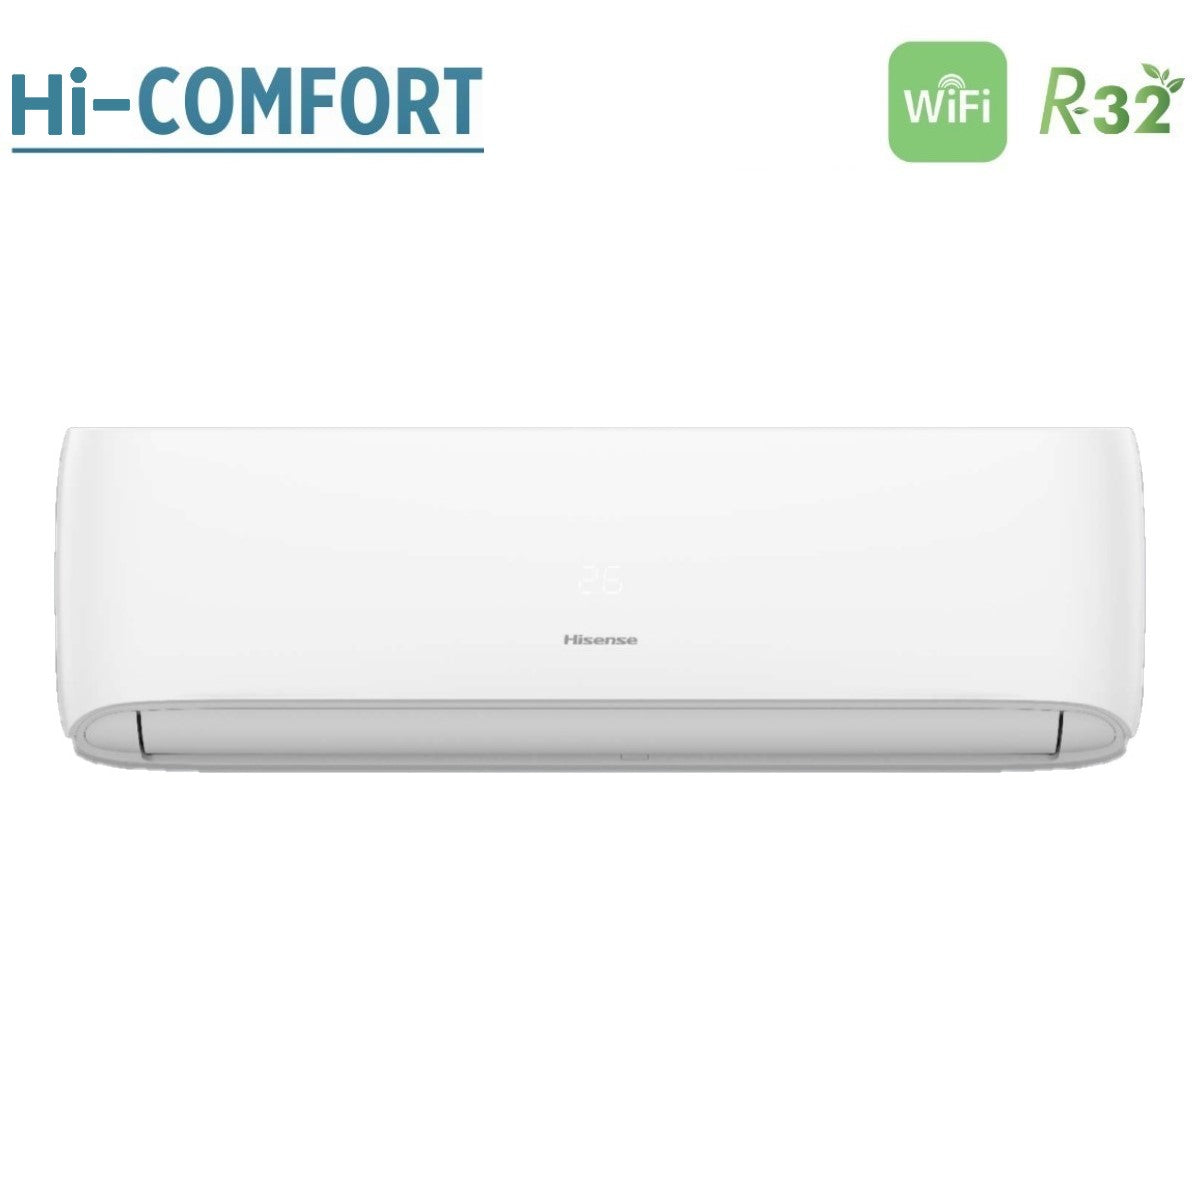 immagine-3-hisense-climatizzatore-condizionatore-hisense-dual-split-inverter-serie-hi-comfort-1212-con-3amw62u4rjc-r-32-wi-fi-integrato-1200012000